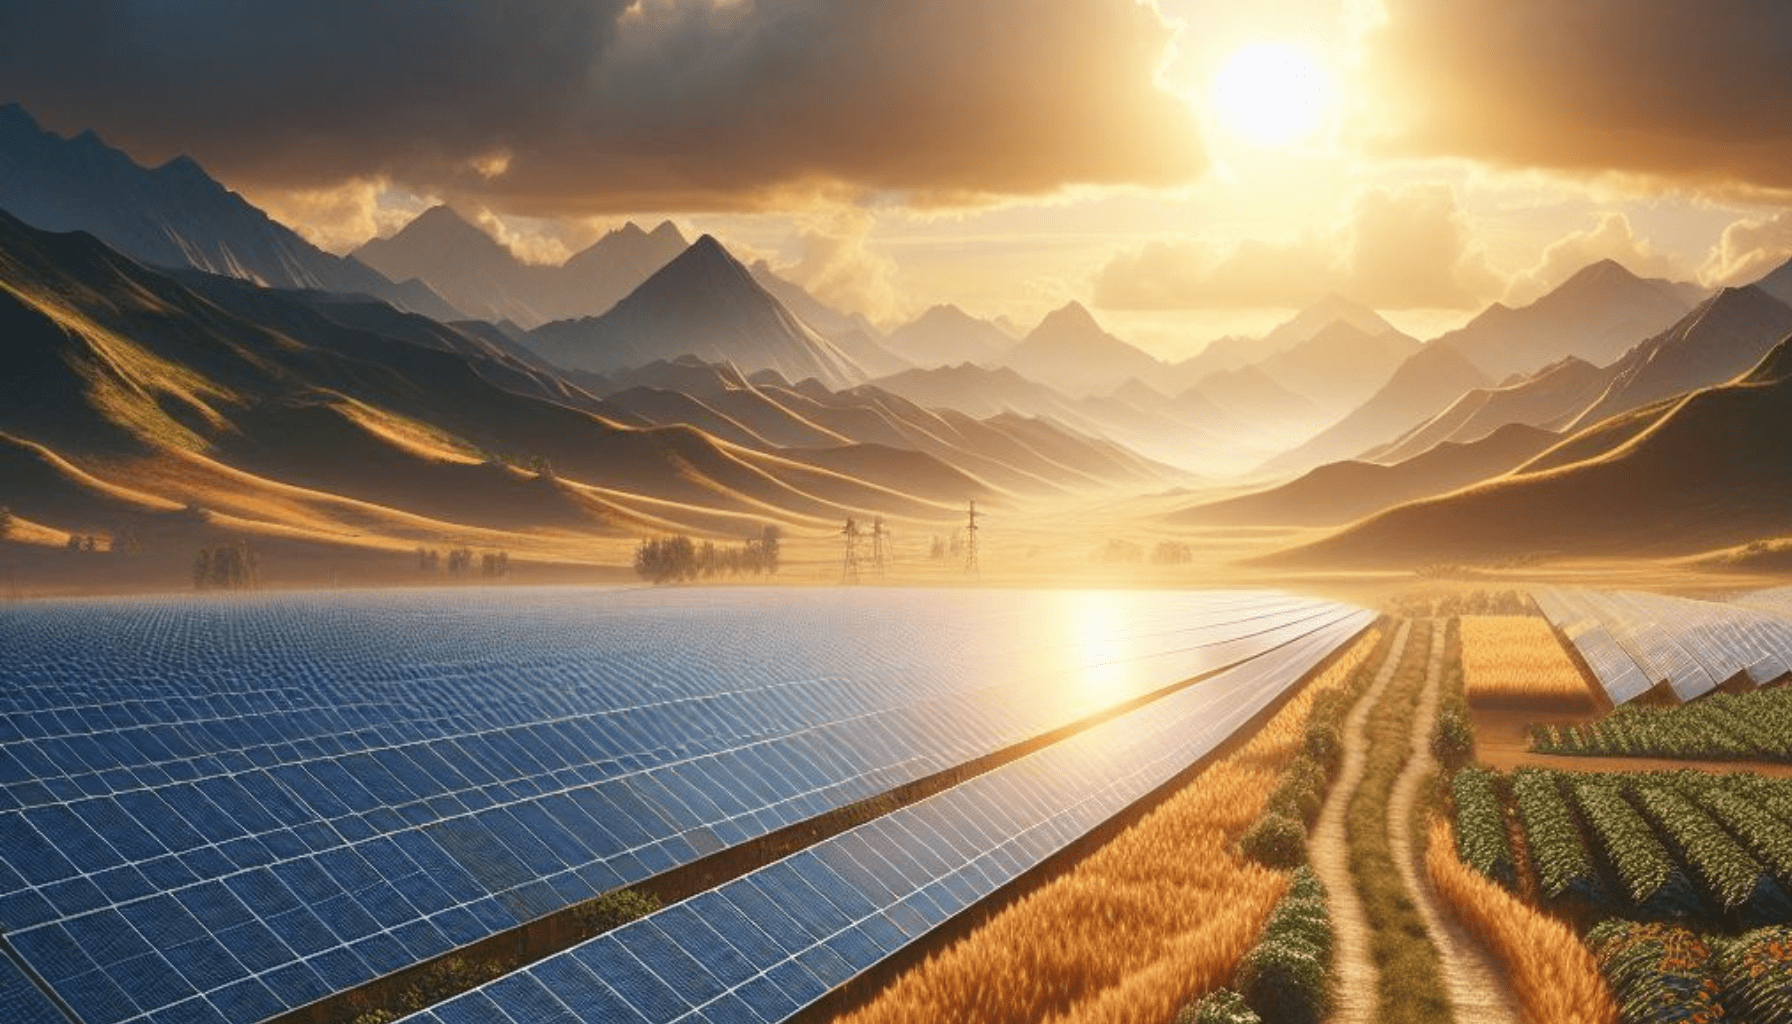 investindo-em-tecnologia-solar-para-iluminacao-um-futuro-sustentavel-ao-alcance-de-todos